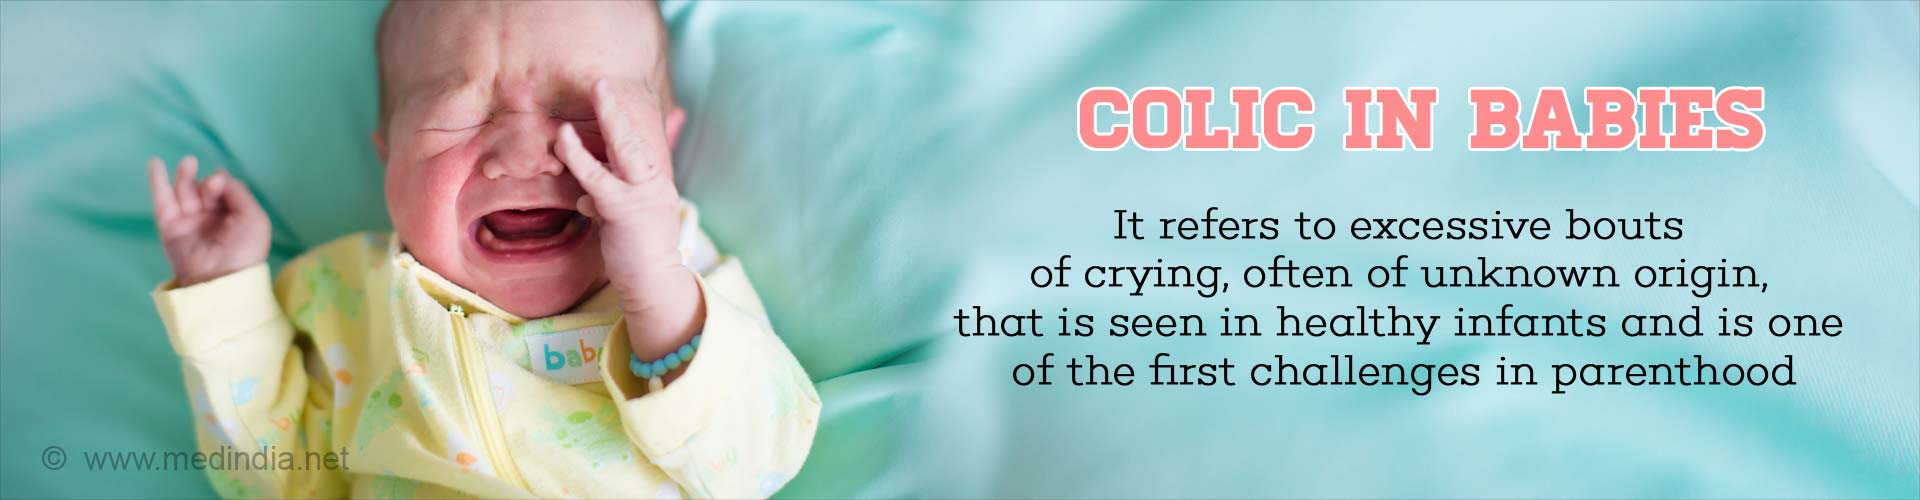 婴儿绞痛——它指的是在健康婴儿中常见的过度哭泣，通常原因不明，是为人父母的首要挑战之一